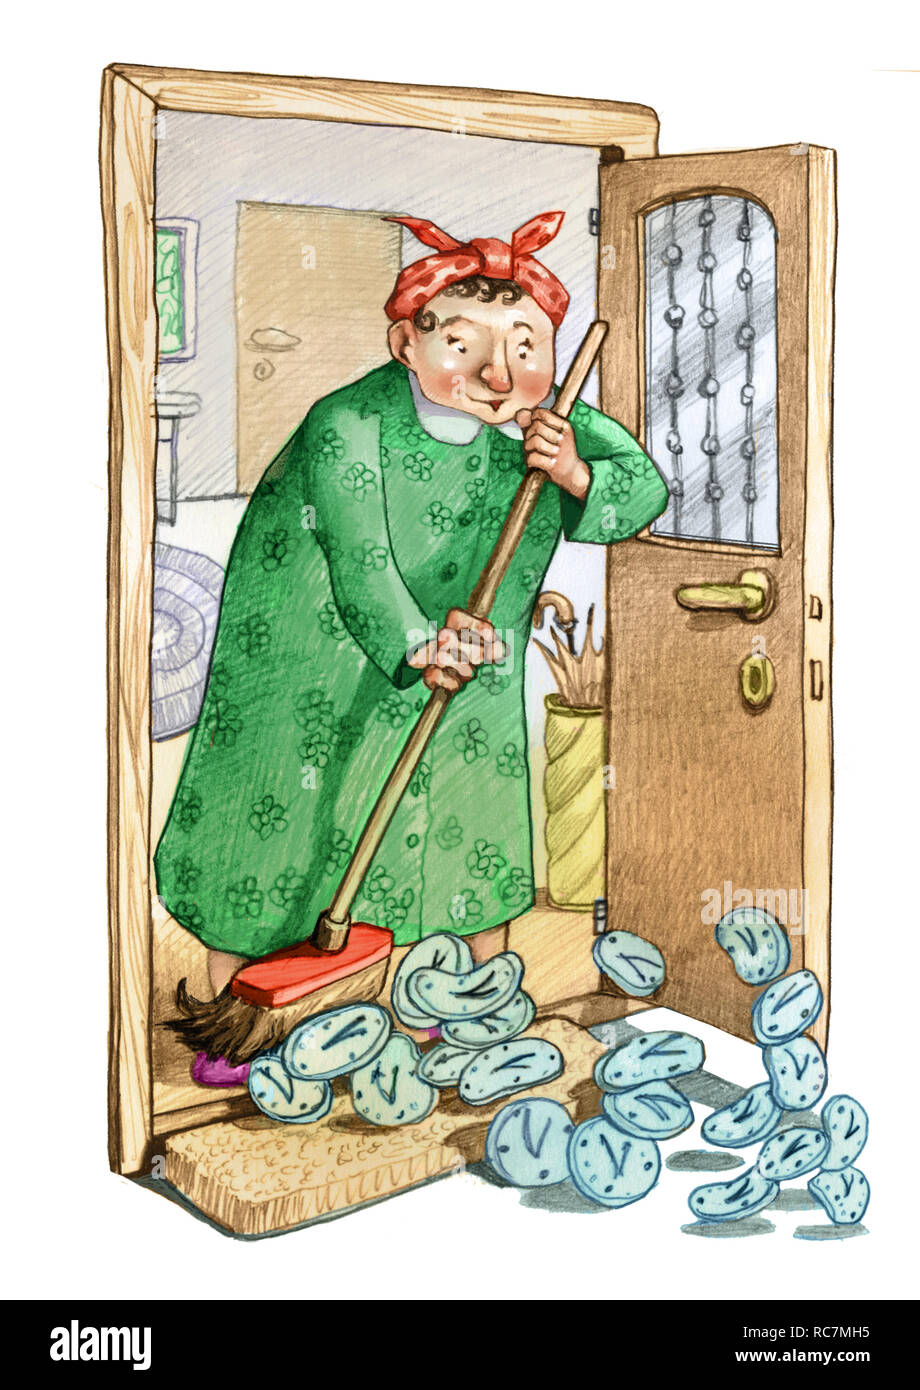 Maîtresse de maison nettoie balai dans certaines horloges métaphore du temps perdu qui ne revient pas à la dessiner au crayon l'humour illustration Banque D'Images